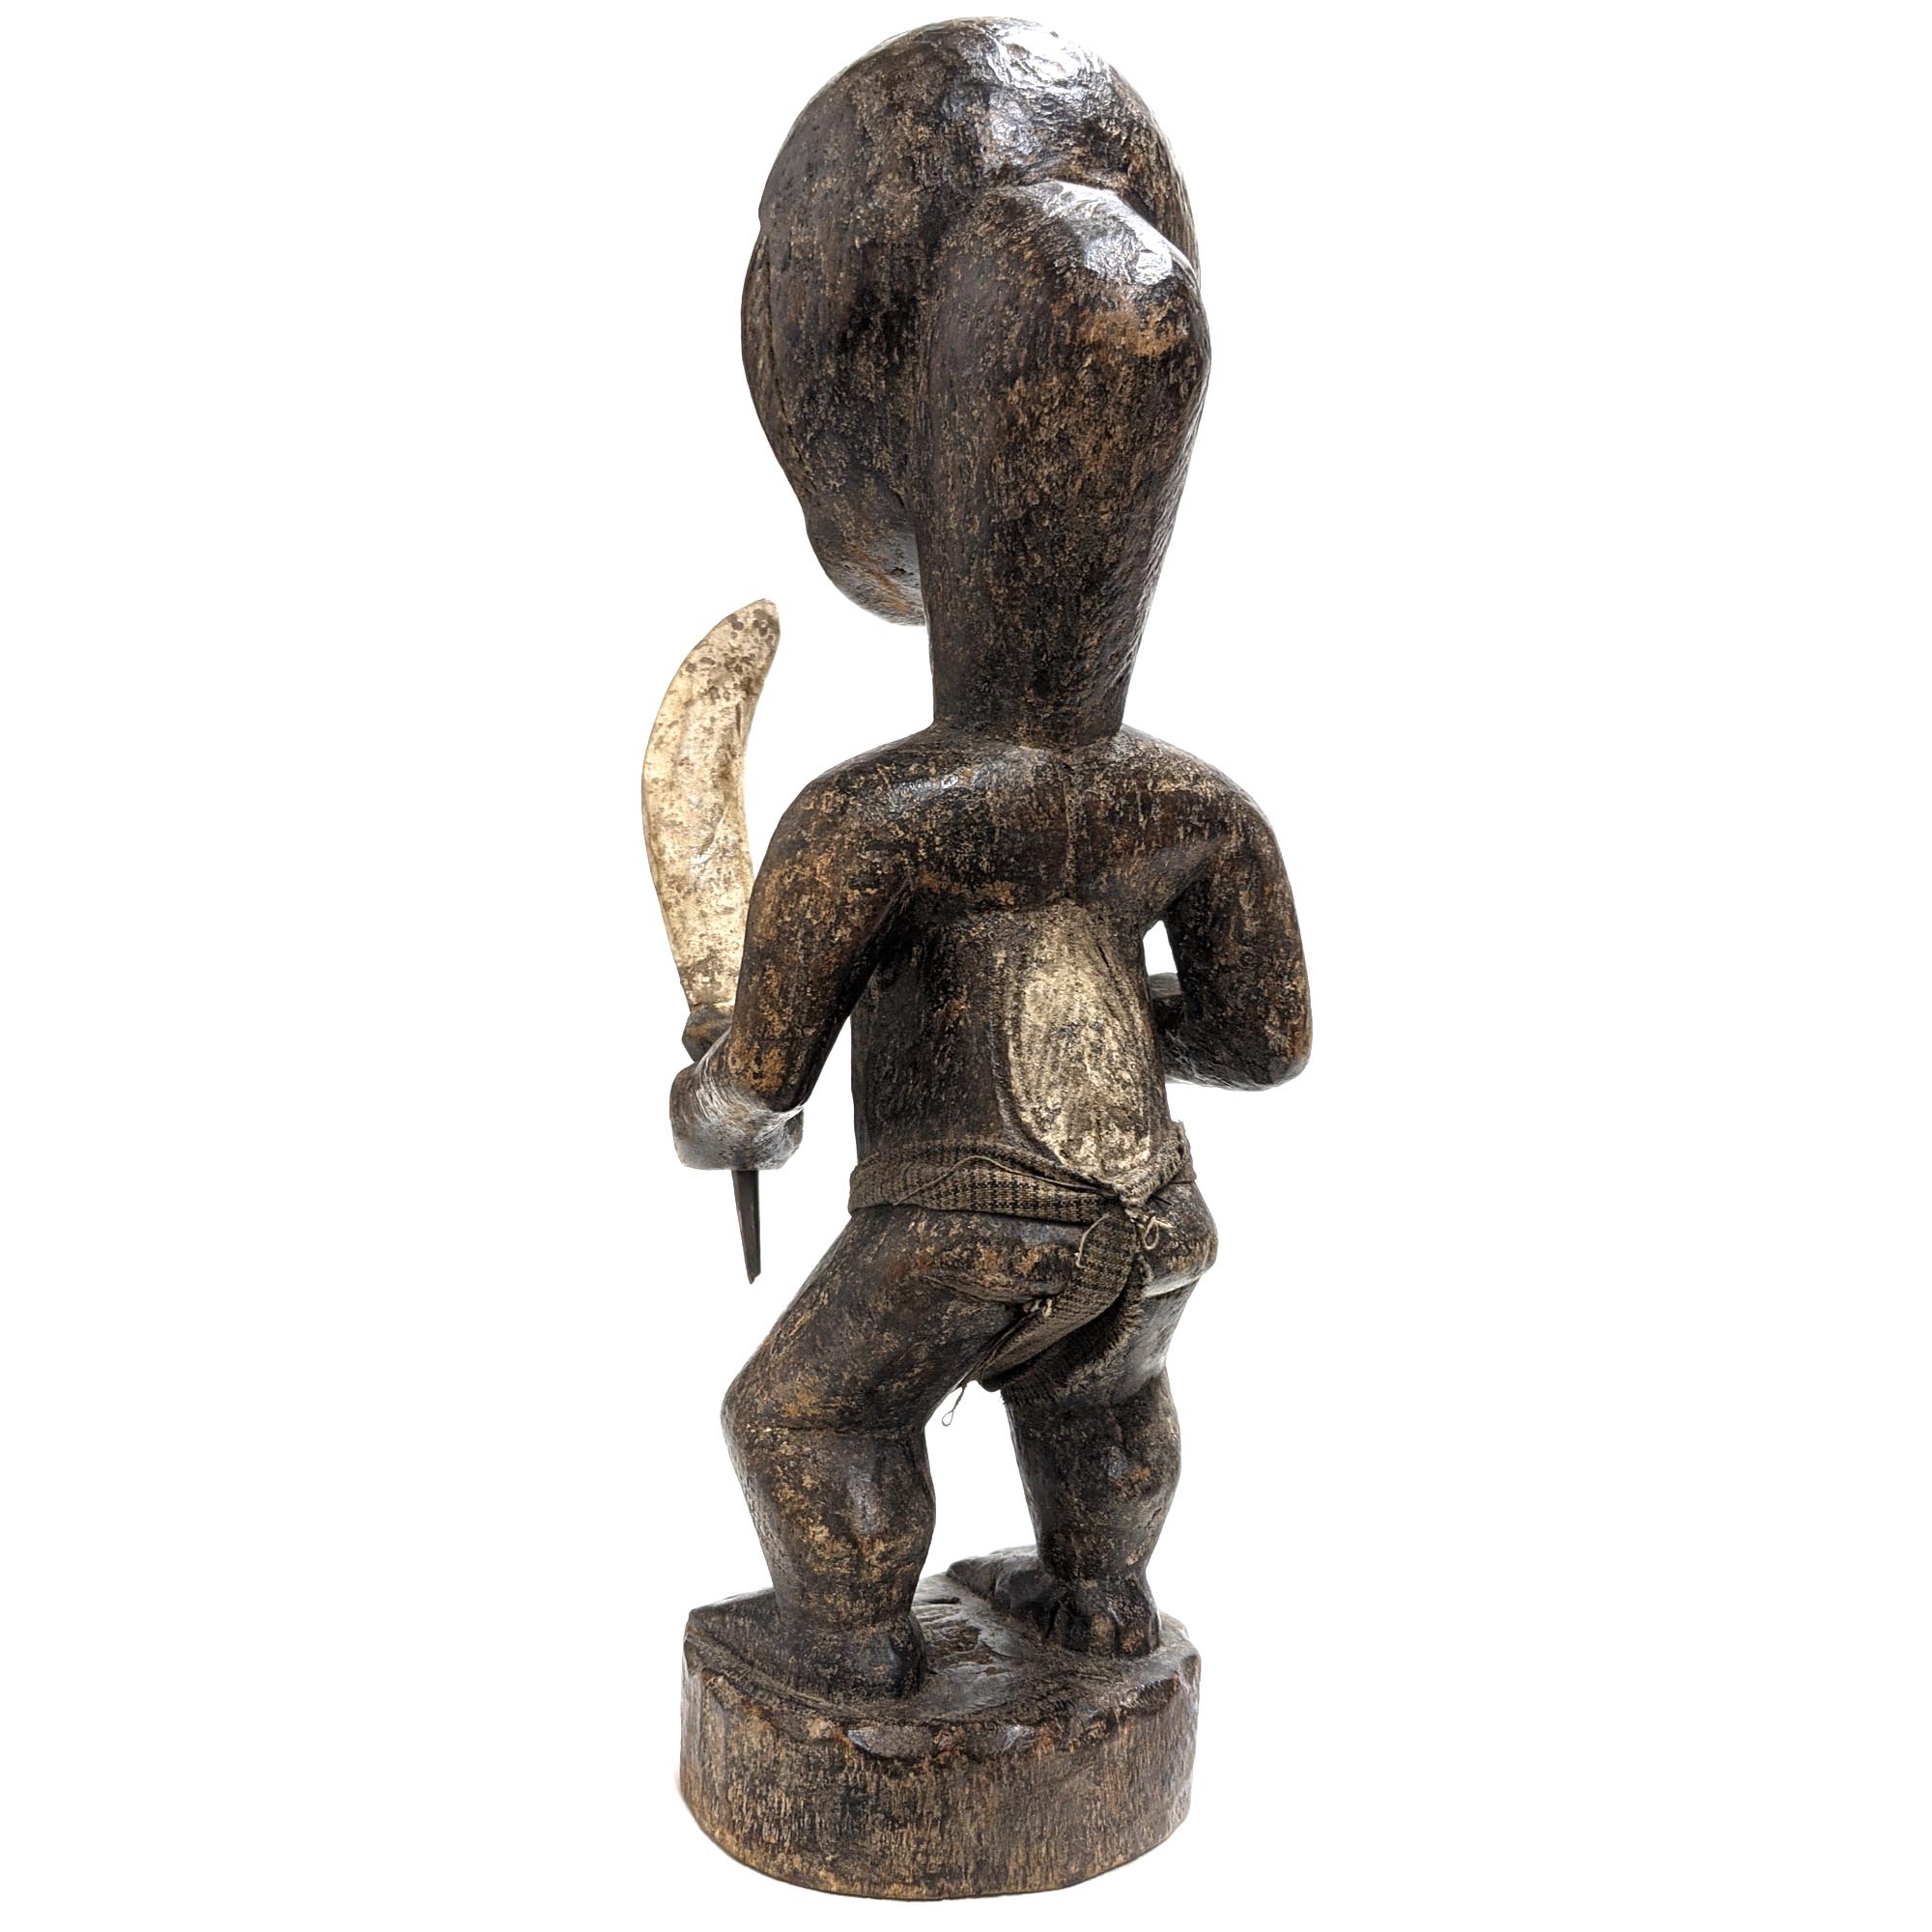 ウェ族戦士像 36cm アフリカ 人形 プリミティブアート 彫像 (c162